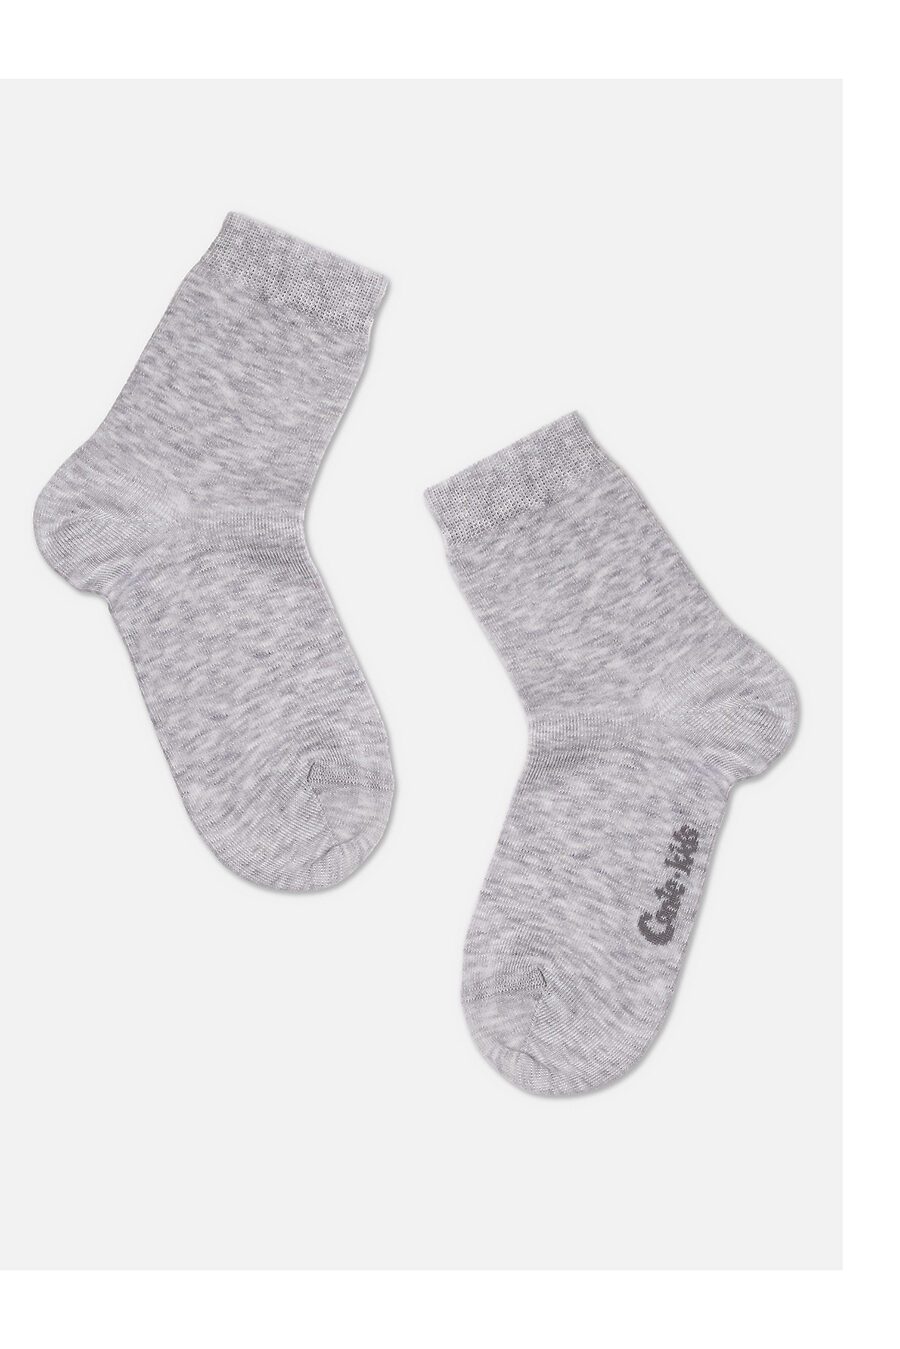 Носки CONTE KIDS (742741), купить в Moyo.moda